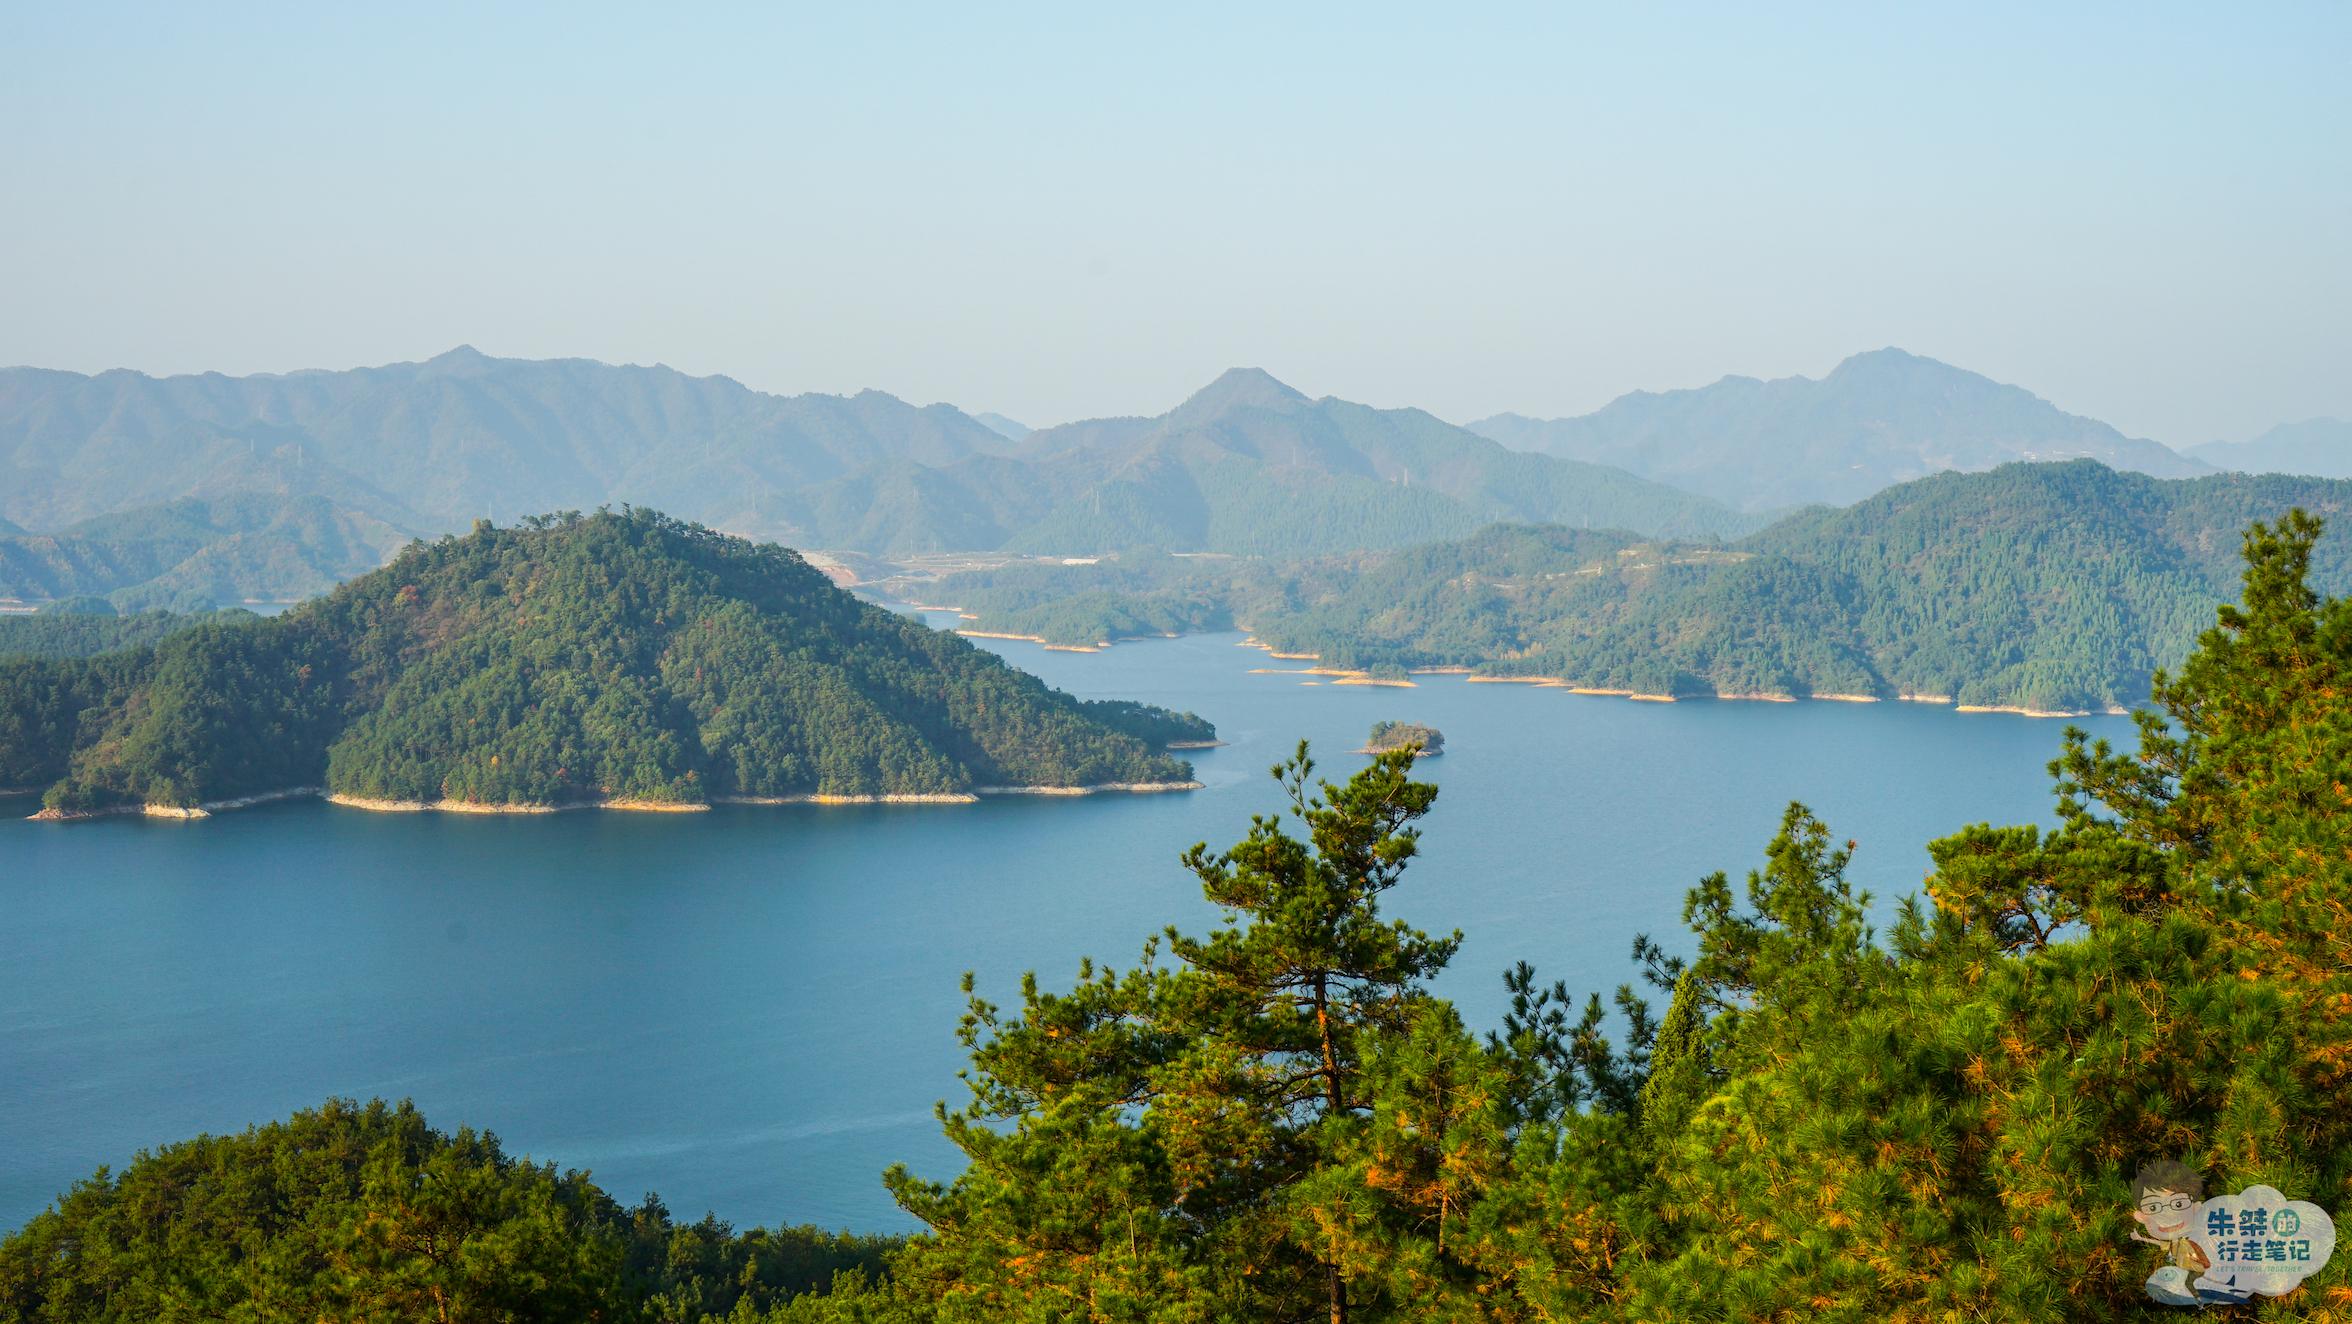 中国最大人工湖 被誉为“天下第一秀水” 因湖中有千座岛屿而得名_千岛湖